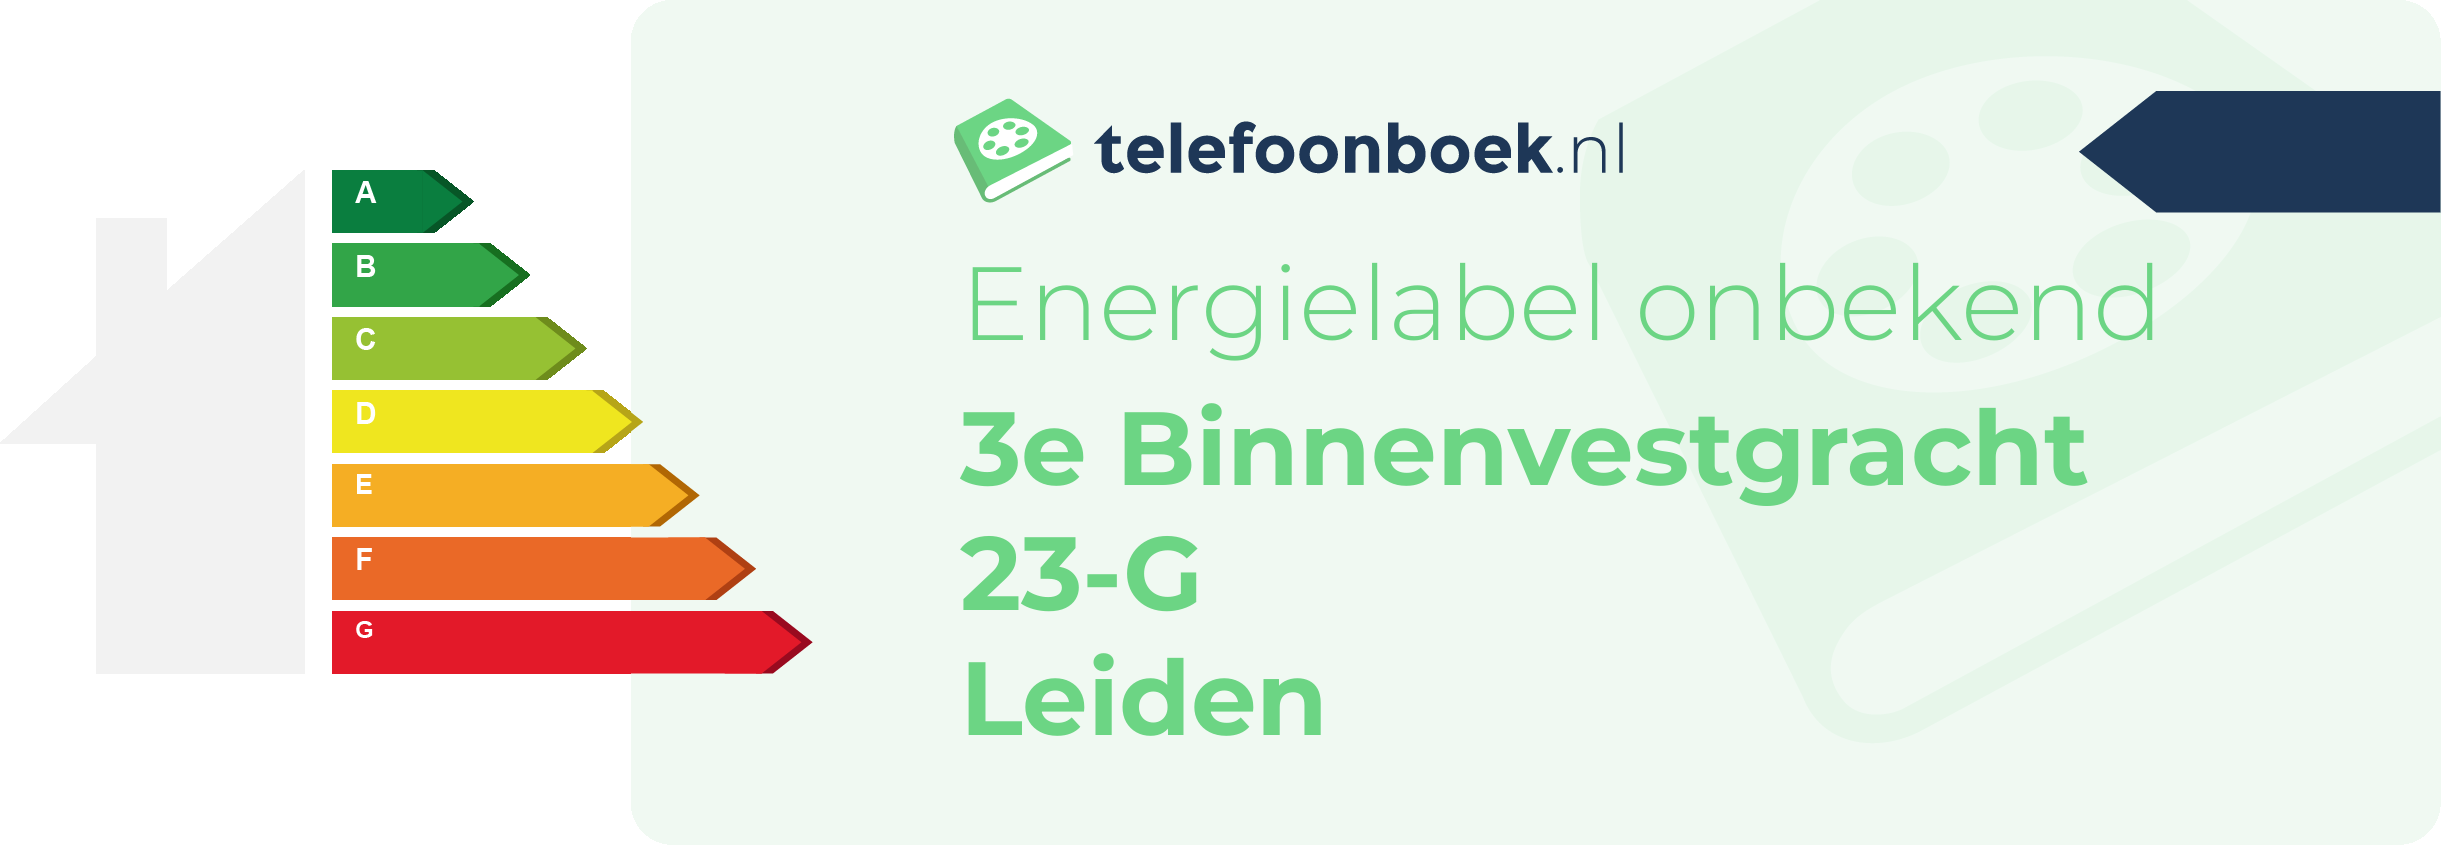 Energielabel 3e Binnenvestgracht 23-G Leiden